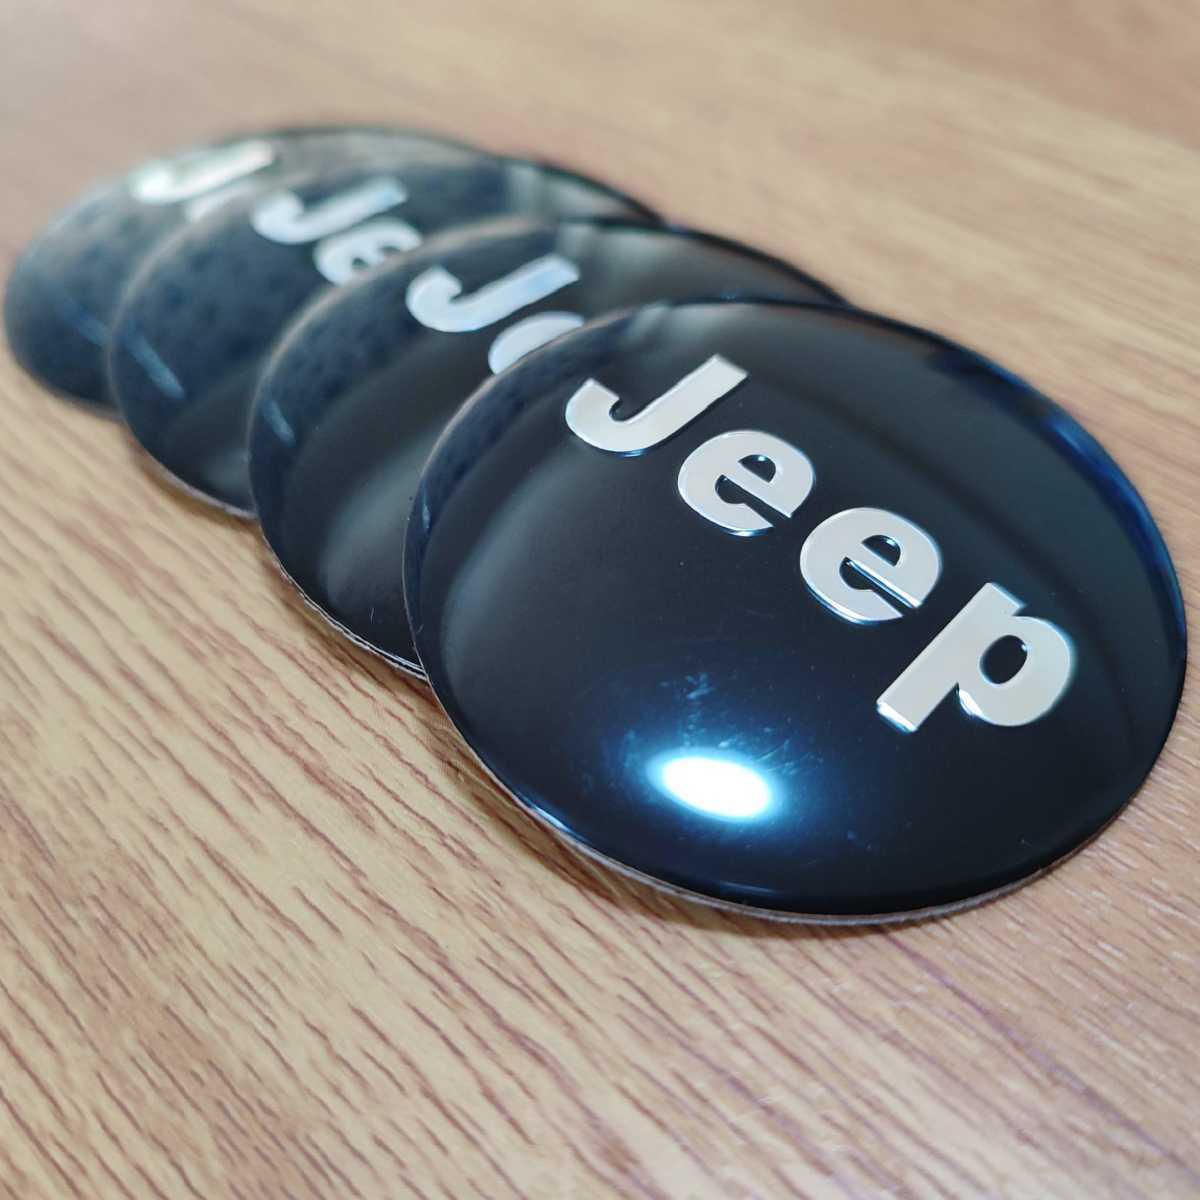 Jeep ホイールセンターキャップ 56mm 4個セット■クライスラー・ジープ ラングラー グランドチェロキー コンパス レネゲード コンパスの画像1